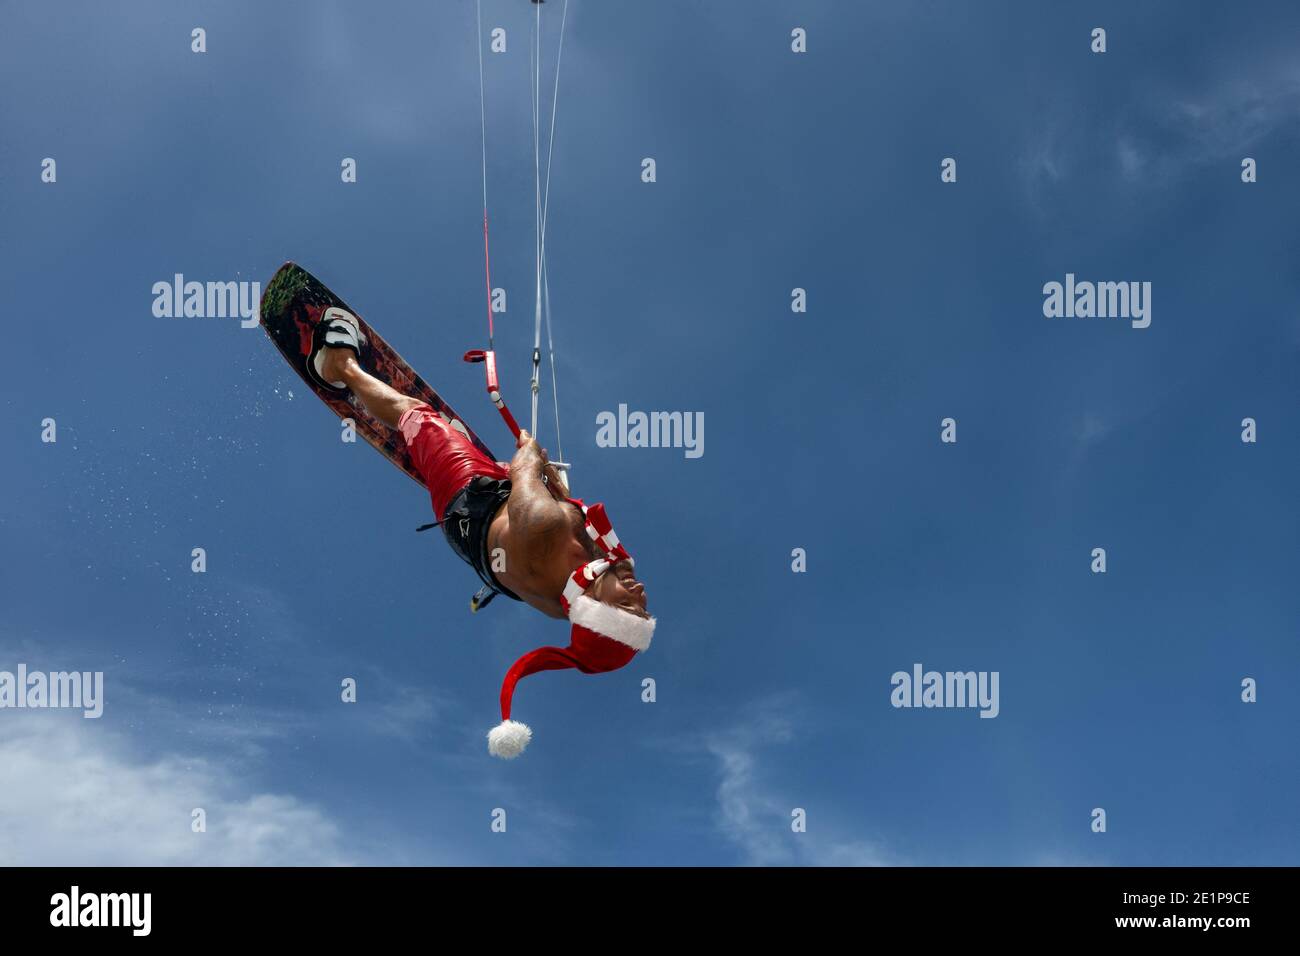 Le kitesurfer professionnel du Père Noël passe les vagues de mer et survole eau Banque D'Images